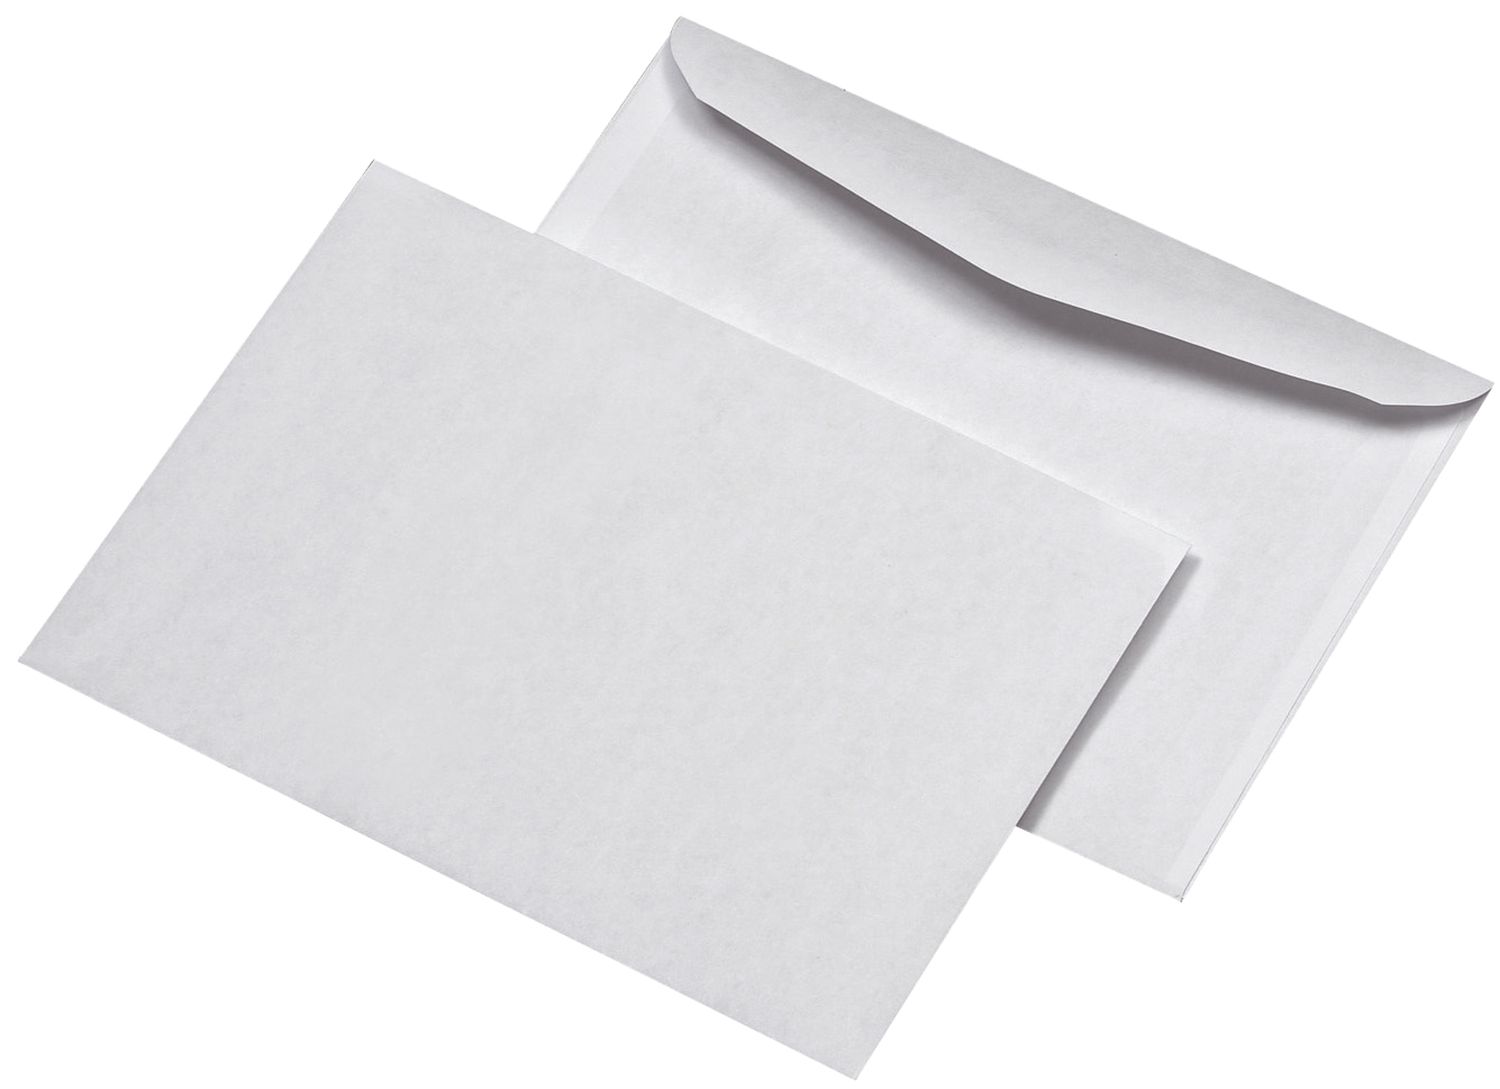 Briefumschläge Kuvermatic MAILmedia® 30005428, B6, ohne Fenster, nassklebend, 75 g/qm, 1000 Stück